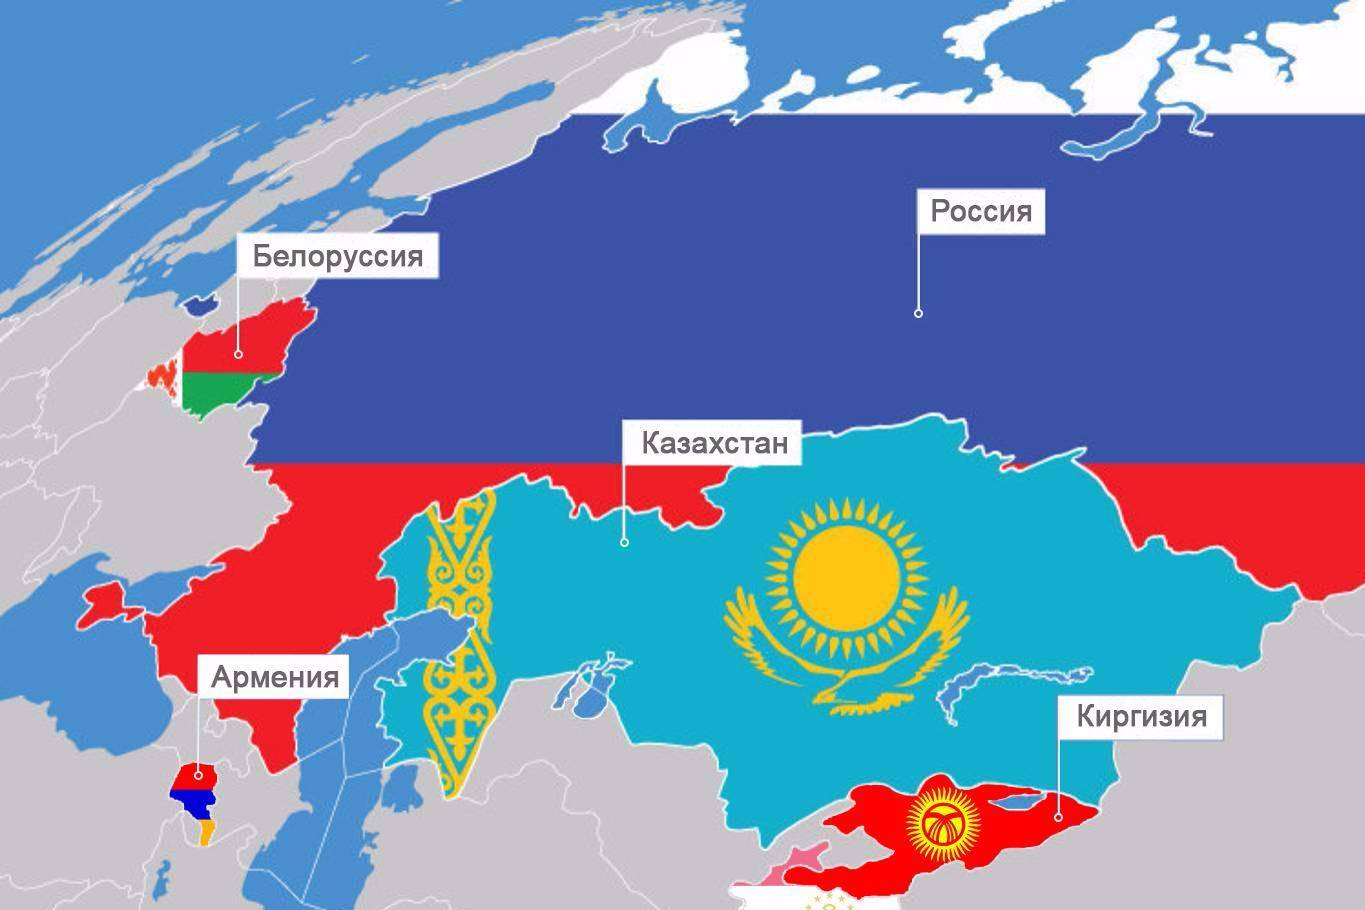 原创再造苏联?哈萨克斯坦总统称,不会加入俄罗斯,白俄组成的新国家